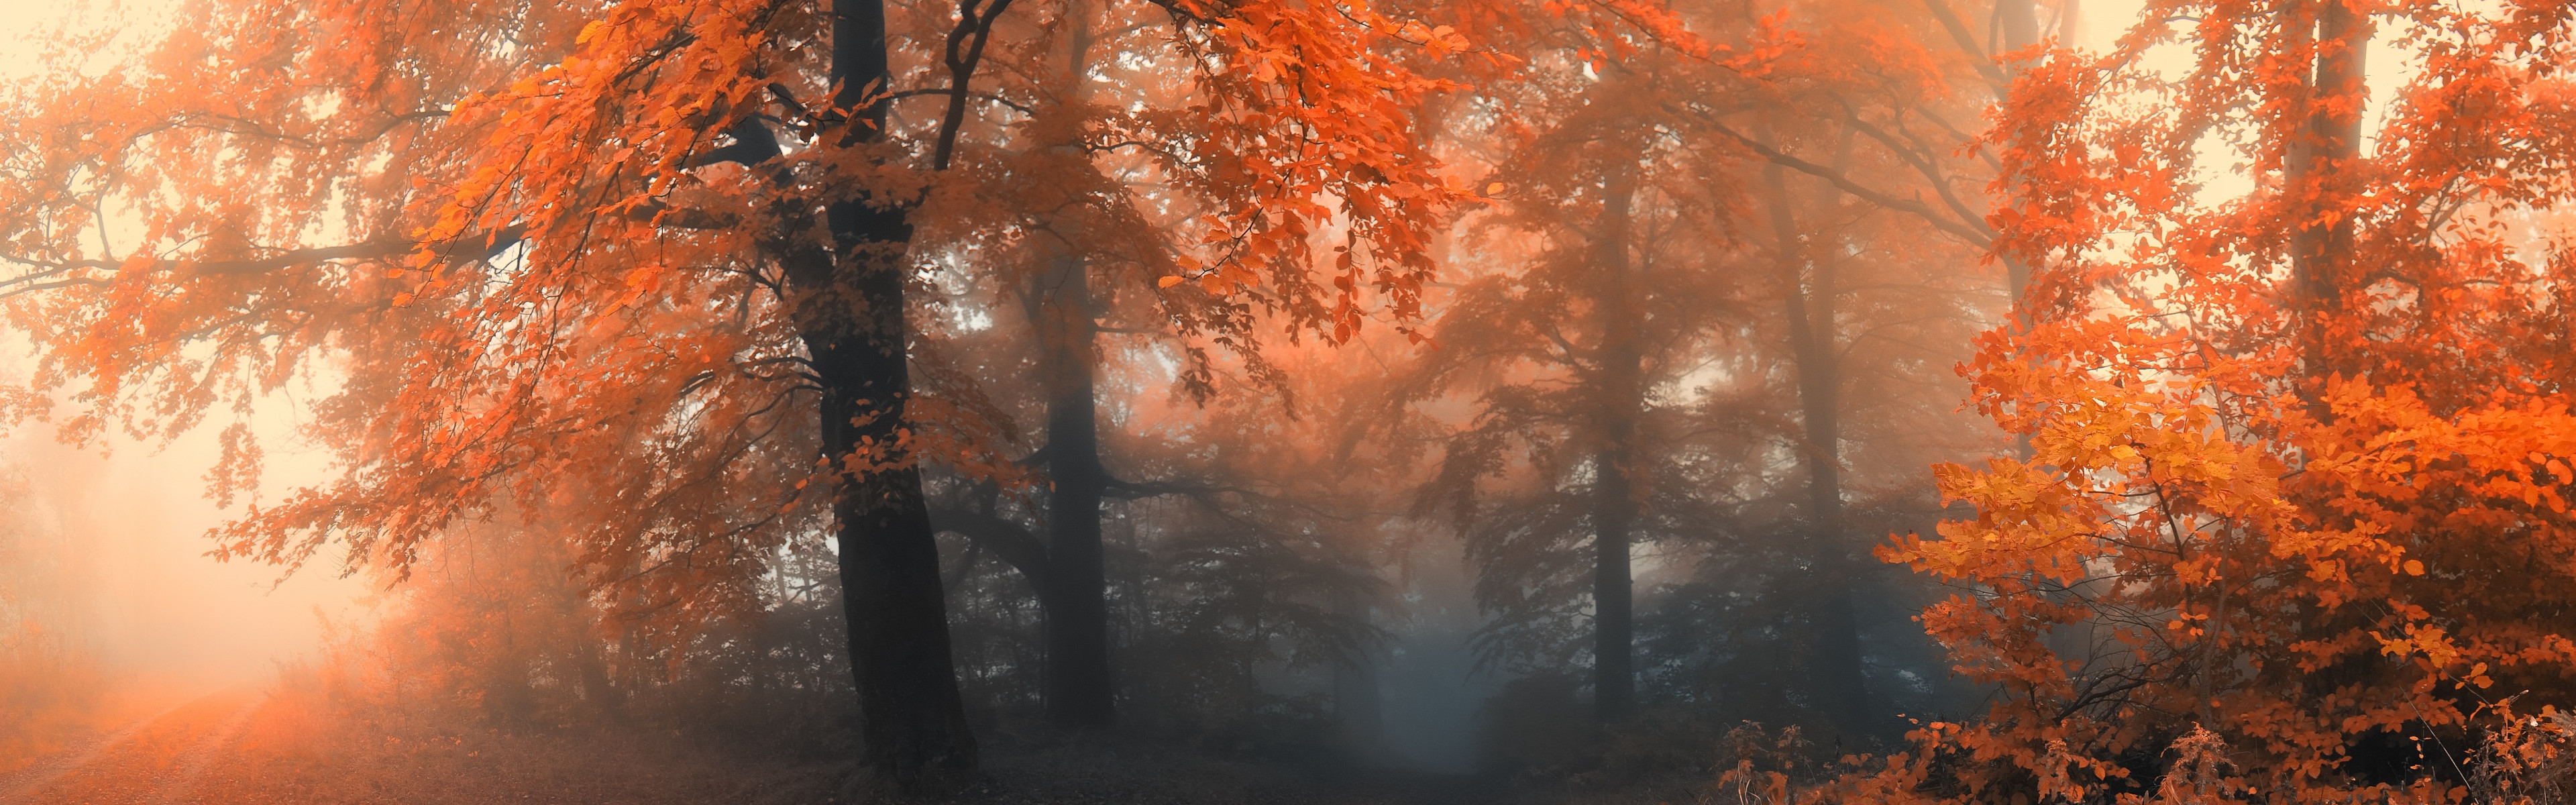 Previous Wallpaper - Mist Autumn Forest - HD Wallpaper 